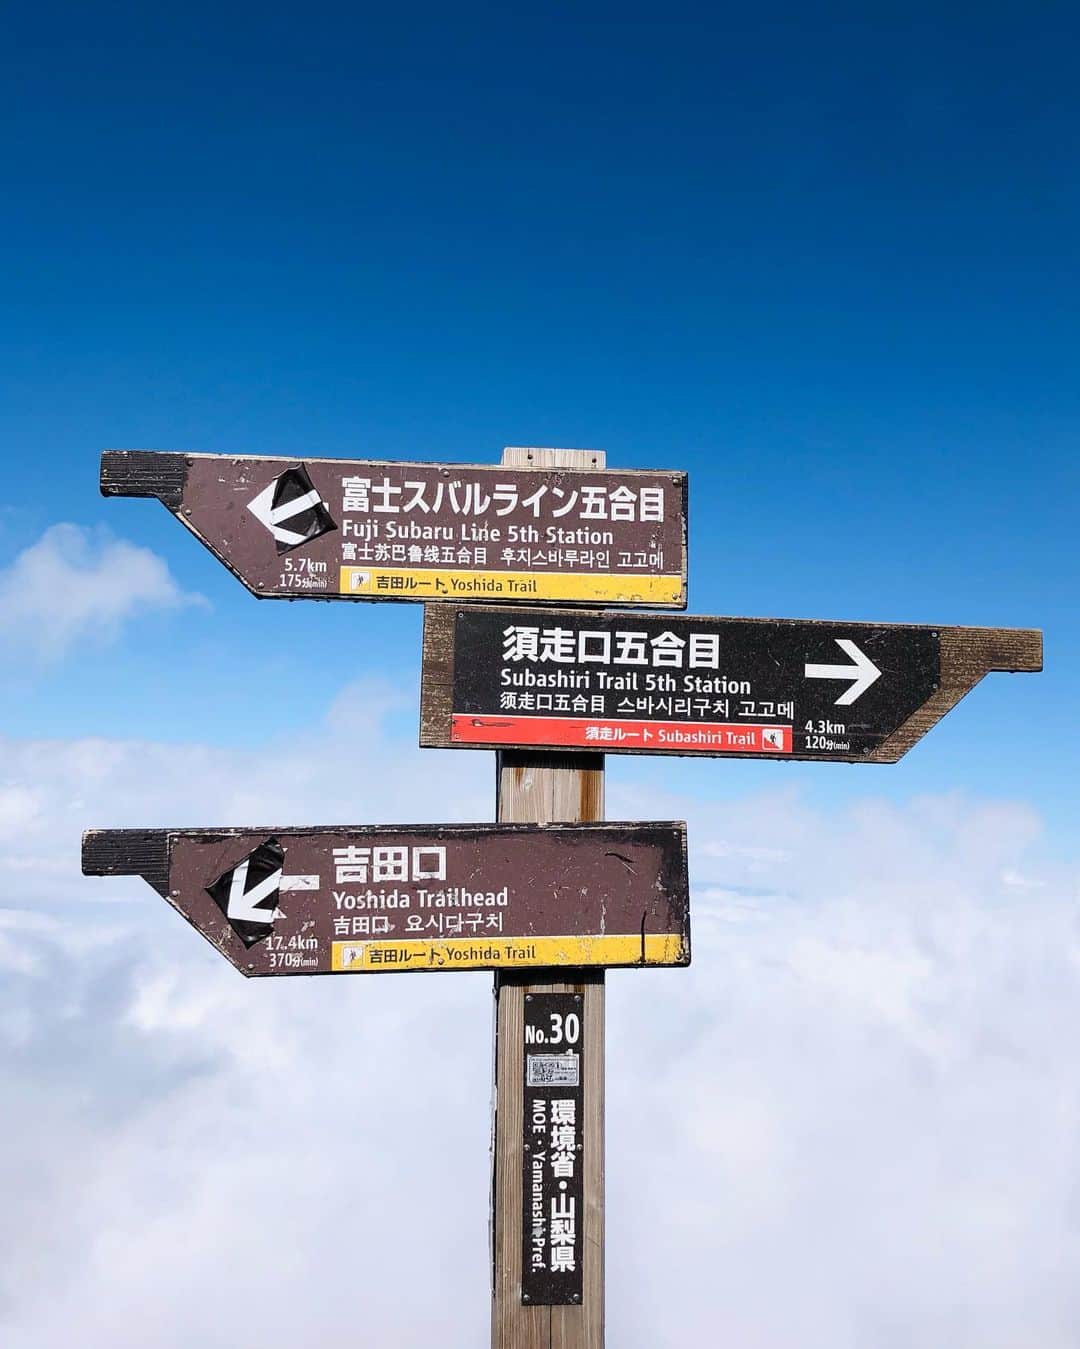 武田静加さんのインスタグラム写真 - (武田静加Instagram)「⁡ ⁡ 【富士山】1人で登ってきました！with小粒🐶  #YouTubeも同時にアップしてます📺 ⁡ ⁡ 富士山の登山は2回目 今回1人で登ったのは 絶対登ると決めてたのに 日程が急遽すぎたから(笑) ⁡ ⁡ ⁡ 今回のテーマの1つに 9歳になる小粒と思い出に残ることがしたい。 年齢も気になってきて 10歳でハードな事はきついかな？ って思ってたので 9歳の今だと決行！ ⁡ 小粒は私といるのが幸せだから お散歩がてら富士山に登れたら 最高の思い出になるのではと考えました。 ⁡ ⁡ ⁡ ⁡ 富士山スバルライン富士山五合目に到着 （吉田ルート） 入山▶︎08:02 山頂▶︎13:30 下山▶︎16:17 ⁡ 休憩時間▶︎トータル約1時間30分ほど (細かく分けて休憩してました) ⁡ ⁡ 景色は断然前回登った方がよくて 撮った写真は ほとんどがガスってて見渡し悪い 雲って感じでした。 ⁡ 9合目あたりで やっと天気になってきました(喜) ⁡ ⁡ ⁡ ⁡ 前回とは全く違う時間帯で 同じ道を登ってるのに 感じる事や挑む心は全然違う。 ⁡ きっと毎年同じこの吉田ルートを 登ったとしても物語が違う。 何でもそうだけど 目標が違うだけで挑み方が違う。 前回は亀並みの🐢遅さの同行者の 物凄いハプニングや思い出が作られたけど 今回は小粒を安全に いかに2人で楽しく登るか。 ⁡ 同じ道でも曇り雨だからこそ 気がつくレイングッズの大切さ などたくさんありました。 何が起きるか分からない だから楽しいのかもしれないなって。 ⁡ ⁡ ⁡ 小さい事ですが 同じ通学路 同じ出勤場でも 一つ見方を変えれば 楽しい時間が作れたり 新しい事に気がついて 趣味が増えたりするんだろうなって。 ⁡ ⁡ ⁡ ⁡ 富士山に登るだけで 考え方が正されるというか ありのままの自分でよいというか 人の温かさにも触れ合えて 素敵な事が多かった。 ⁡ ⁡ ちっぽけな自分が嫌で 9月この時期に何故か登りたくなる富士山 6.7月の梅雨で心が沈み 8月遊んで 9月疲れた心や目標を持たないと と思い始めるのが この時期だったり... ⁡ 1番高い山に登れれば 強く生きていける 心の修行の場だとはじまります。笑 ⁡ ⁡ 自然の素晴らしさや 温かさを学んで心が浄化され 本来あるべきあり方なども 考えさせられる ⁡ 東京に帰ったら また東京モードに 切り替わっちゃうんだけど 忘れたくない感覚を どこかに持ち続けられる。 ⁡ 富士山って素敵ね🗻🌞 ⁡ ⁡ ⁡ ⁡ 登山者同士の助け合いも含め 山の挨拶はしたほうがよいんですって。 素敵ですよね！ ⁡ ⁡ ⁡ ⁡ そして ⁡ 富士山の登山を考えてる方 下山の時、レッグウォーマー？があれば 石が靴の中に入らないのでおすすめです。 前回も思ってたのに、今回忘れてしまった。悔 (下山の時、ハイカットでも石がたくさんはいるのでレッグウォーマー？おすすめです。) ↑ 本当安いのでいいから買って欲しい！！ 膝が笑うし 石が入ると疲れもあるので大変なのです。 ⁡ ⁡ ⁡ トイレを使用するにもお金がかかるので 100円玉をたくさん 持っていくのをおすすめ。 ⁡ ⁡ 山小屋で食べ物が売ってるので 是非食べて欲しいなあ。 値段は山価格なのですが とっても美味しく感じますよ。 ⁡ ⁡ ⁡ 1人じゃ寂しかったけど 小粒さんと一緒だから 会話出来て微笑ましい事なども たくさんあって楽しかったです。 ⁡ ⁡ 体力の違い、息切れをしない小粒をみて 歳は関係ないのか？山登りは疲れないのか？ など驚くことが多くて 私が足を引っ張りまくってたな という感想でした(笑) ⁡ ⁡ 犬も高山病になると調べてたので 休み休み登ってました。 登山前に下調べをしていくと 答え合わせができるので YouTubeやググってみて下さい。 とてもお勉強になり 納得する場面が たくさん出てくると思います。 ⁡ ⁡ ⁡ 4枚目の写真 これがほとんど登山中に見た景色(笑) ⁡ ⁡ 9枚目 前回降りる方向間違って すぐ気がついて引き返した危ない場所。 ⁡ ここを間違えると酷い目にあう。 今回は明るかったので間違わなかったです。 (途中あってるか聞きましたが)笑 ⁡ ⁡ 下山は一緒に登ってくれたご褒美に スリングの中で ゆっくり休んでもらいました😉！ ⁡ ⁡ ⁡ ⚠️ 今回、富士山の登山は 犬同伴でも大丈夫かなど 沢山調べて行きました。 (犬と登山を考える方は、各自で下調べが大切です) ↑ については 9月13日投稿のラインブログ YouTubeの概要欄 に書かせてもらってるので 読んで頂けたら嬉しいです。 長すぎてオーバーです。 と載せられませんでした🙇‍♂️ ⁡ ⁡ ⁡ 長くなりましたが 人生レベルを引き上げる 挑戦記録として残させて下さい🔥 ⁡ スルーされても仕方ないであろう 長い文を読んでくださり ありがとうございました🙏🥰笑 ⁡ ⁡ ⁡ #武田静加#富士山#富士山山頂#登山#山頂 #MountFuji#日本一#登山女子 #犬のいる暮らし#マルプー#Maltipoo#小粒 #感謝#富士スバルライン五合目」9月13日 19時09分 - takedashizuka0517